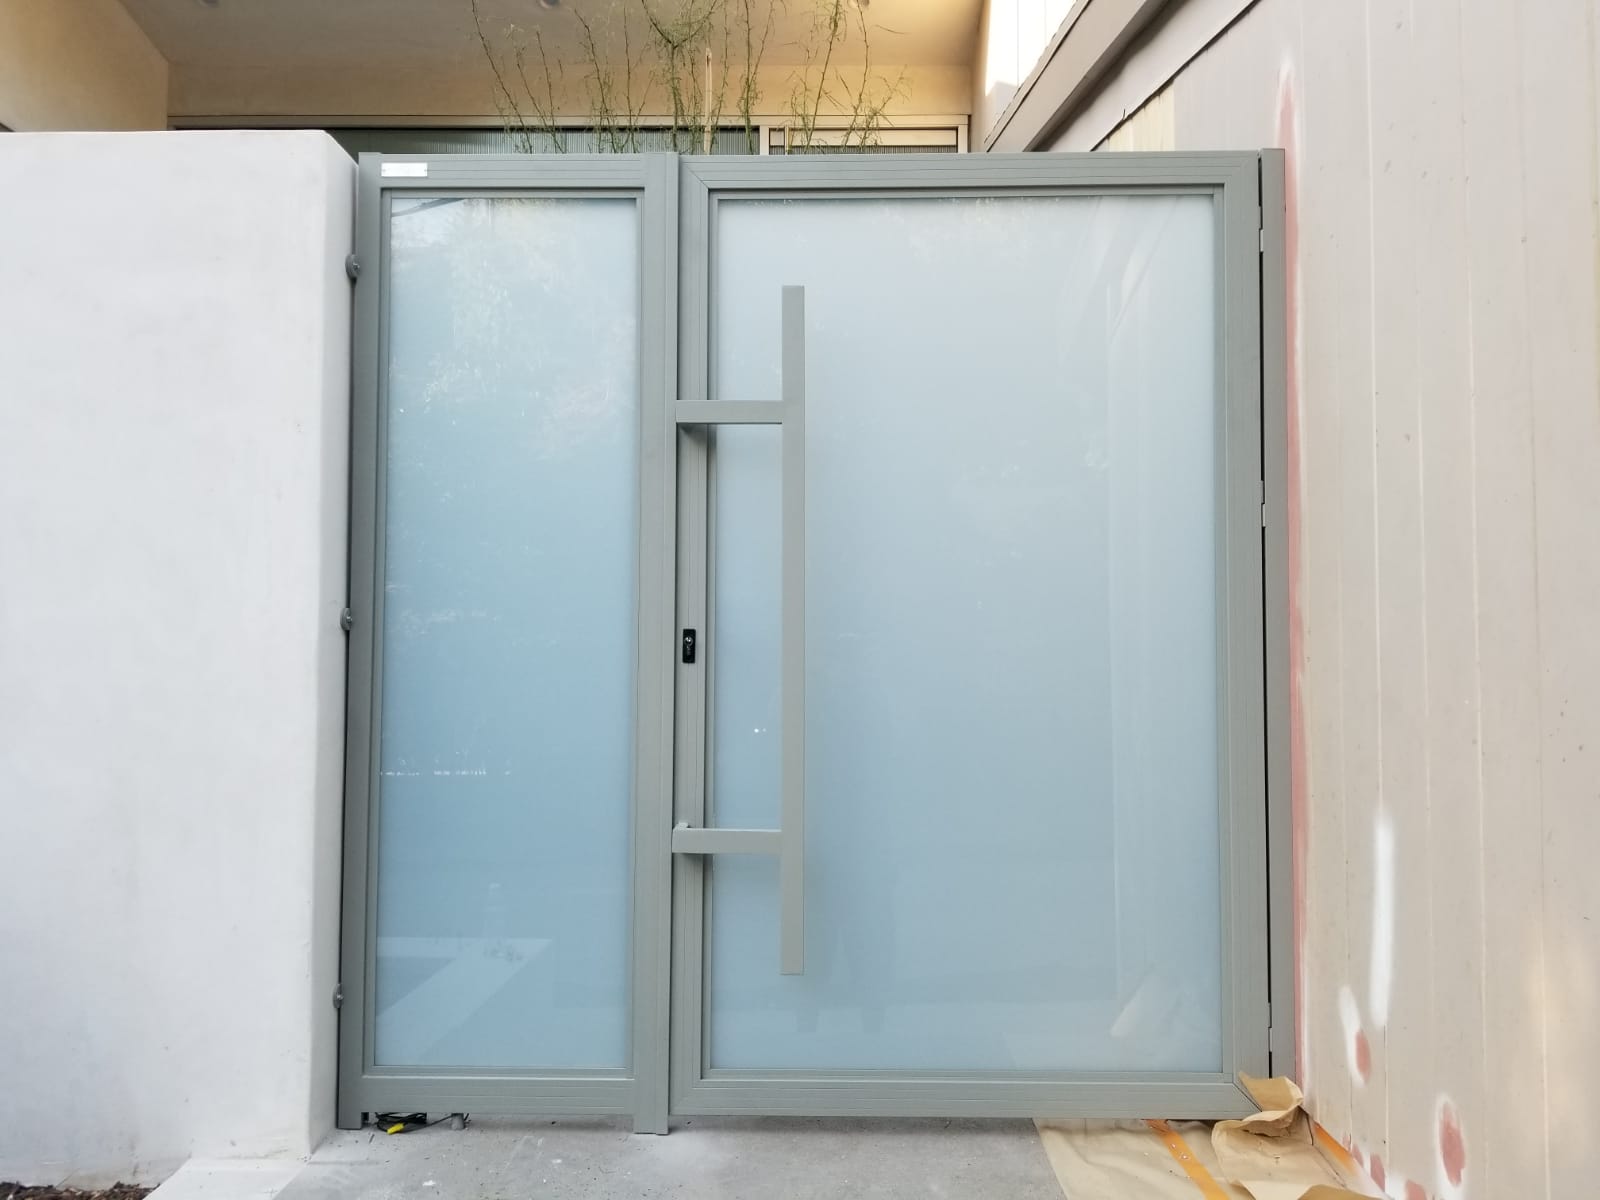 דלת זכוכית במסגרת פרופיל אלומיניום בגוון אפור